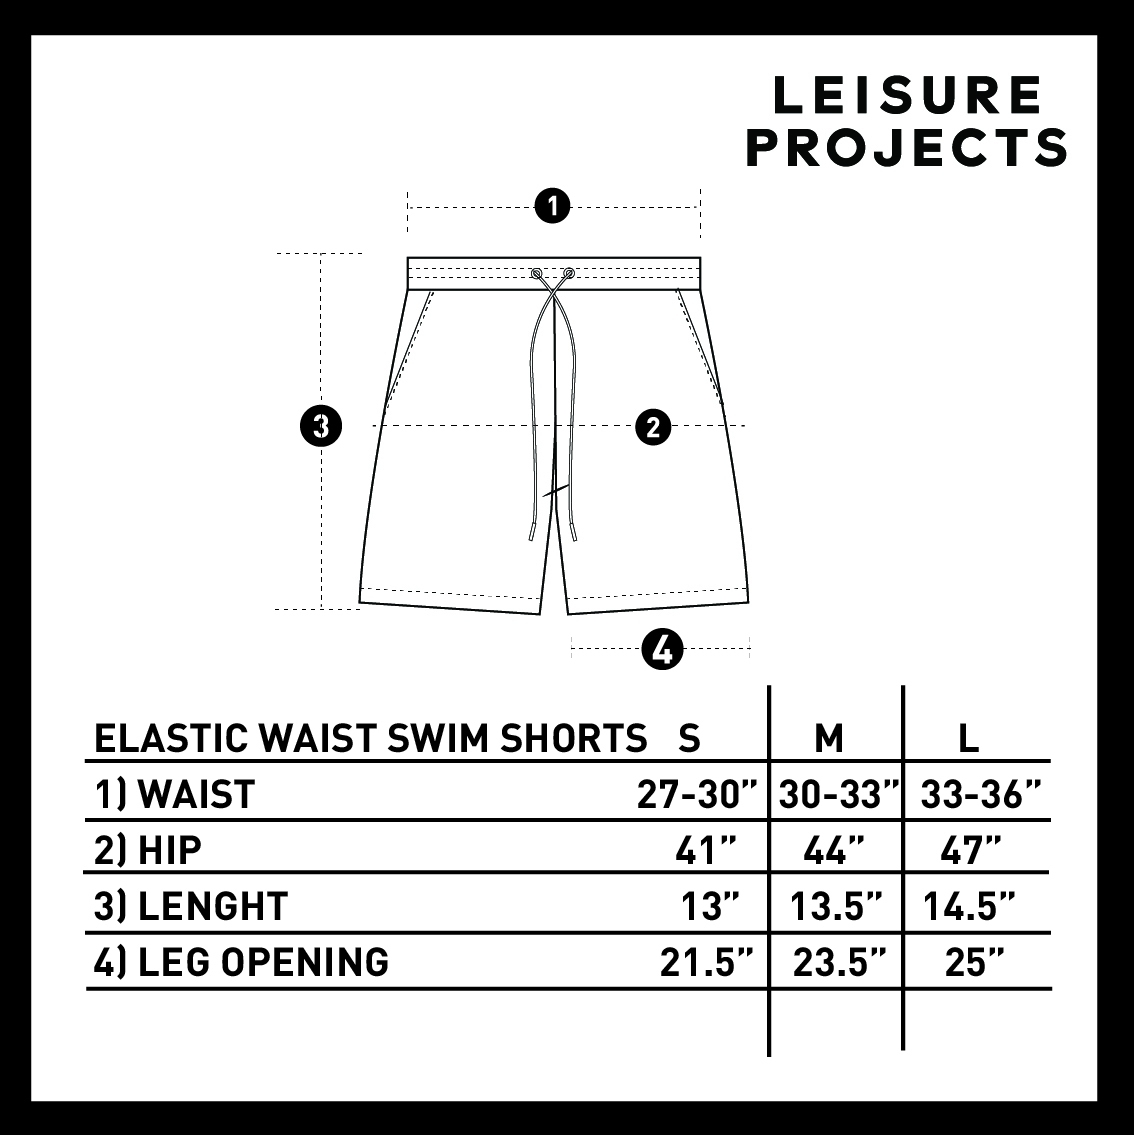 (LEISURE PROJECTS) LEISURE SWIM SHORTS กางเกงว่ายน้ำขาสั้น เอวยางยืด, ดีเทลเชือกรัดเอว พร้อมกระเป๋าข้างเเละด้านหลัง,ผ้าซับในตะข่ายด้ายใน